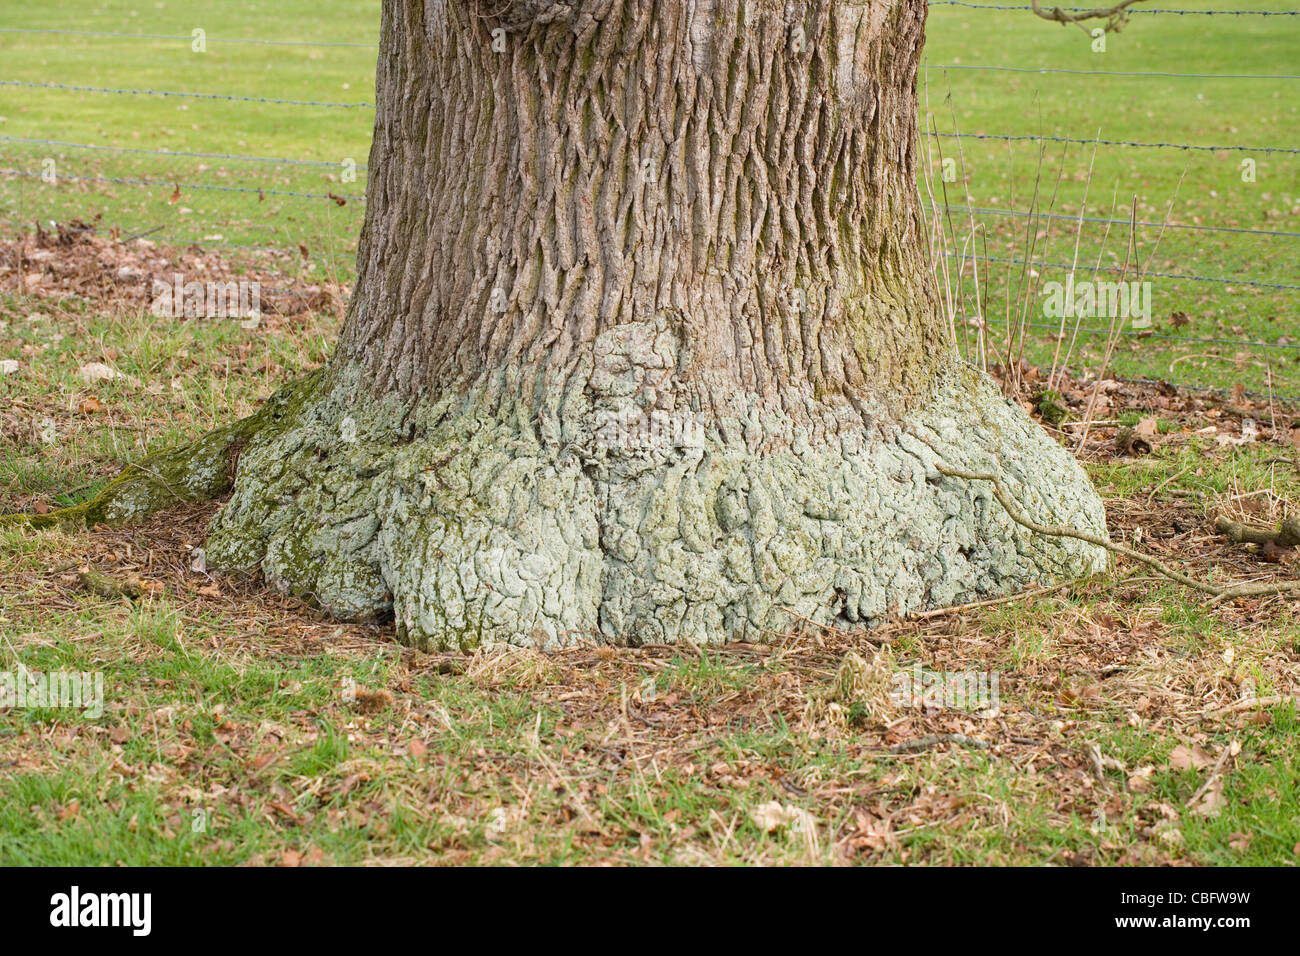 English Oak (Quercus robur). Trunk or bole of a mature tree. Stock Photo